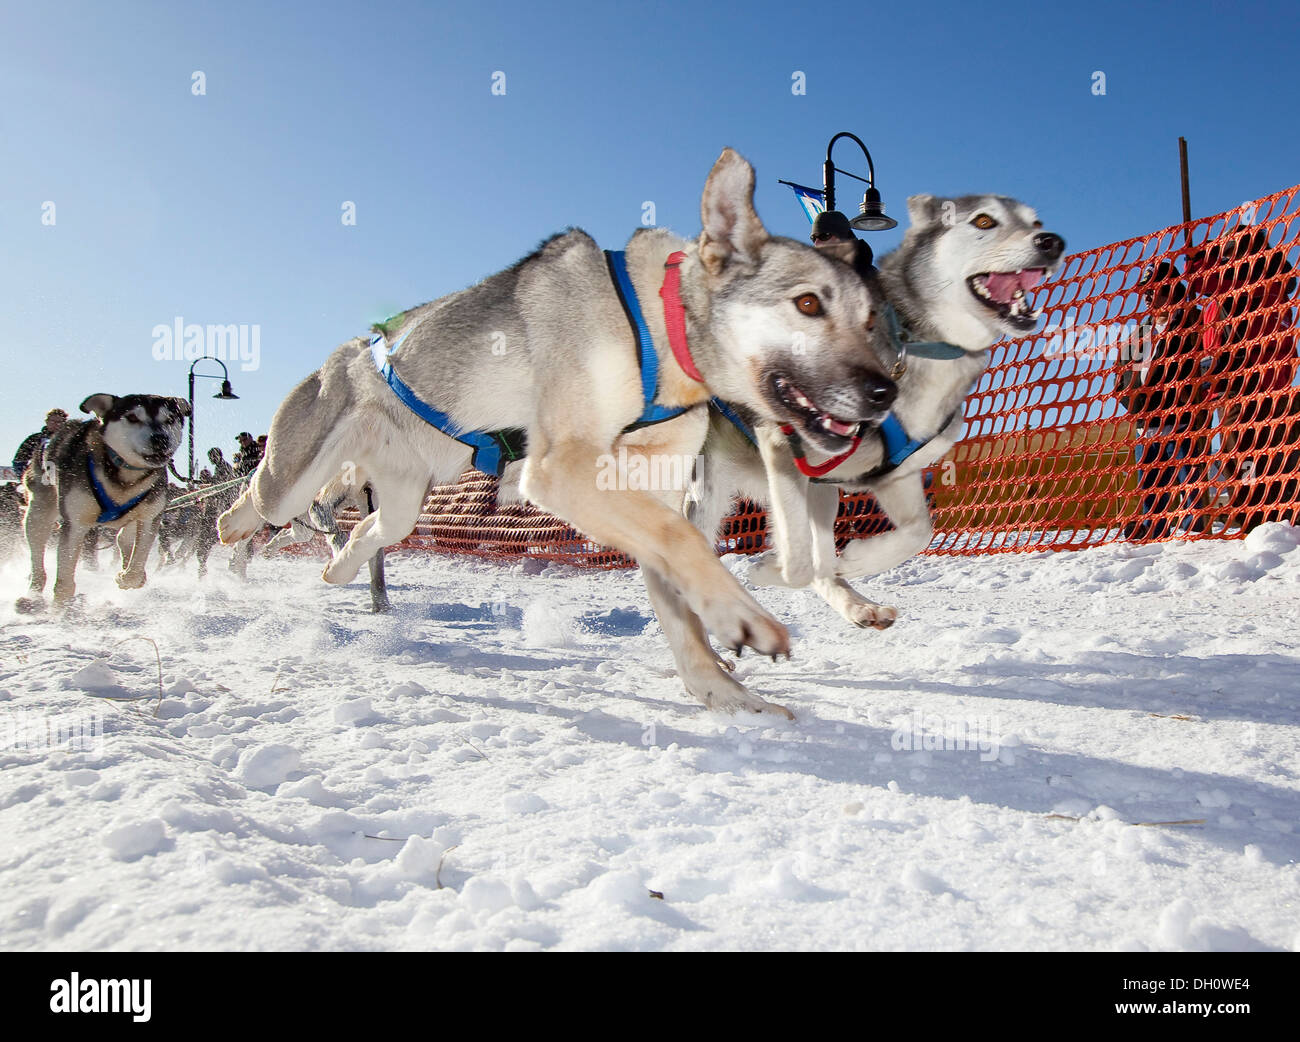 Lead dogs, running sled dogs, Alaskan Huskies, dog team, start of Road Runner 100 dog sled race, Whitehorse, Yukon Territory Stock Photo